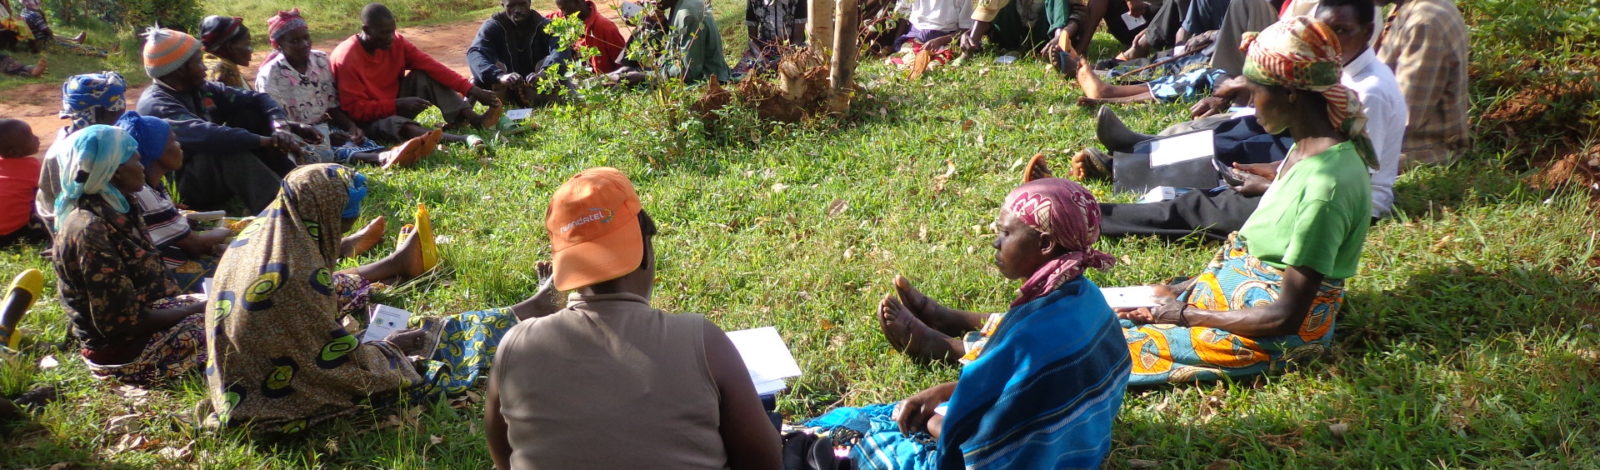 Renforcement du processus de réconciliation et de promotion de l'harmonie familiale au Rwanda par la thérapie sociale